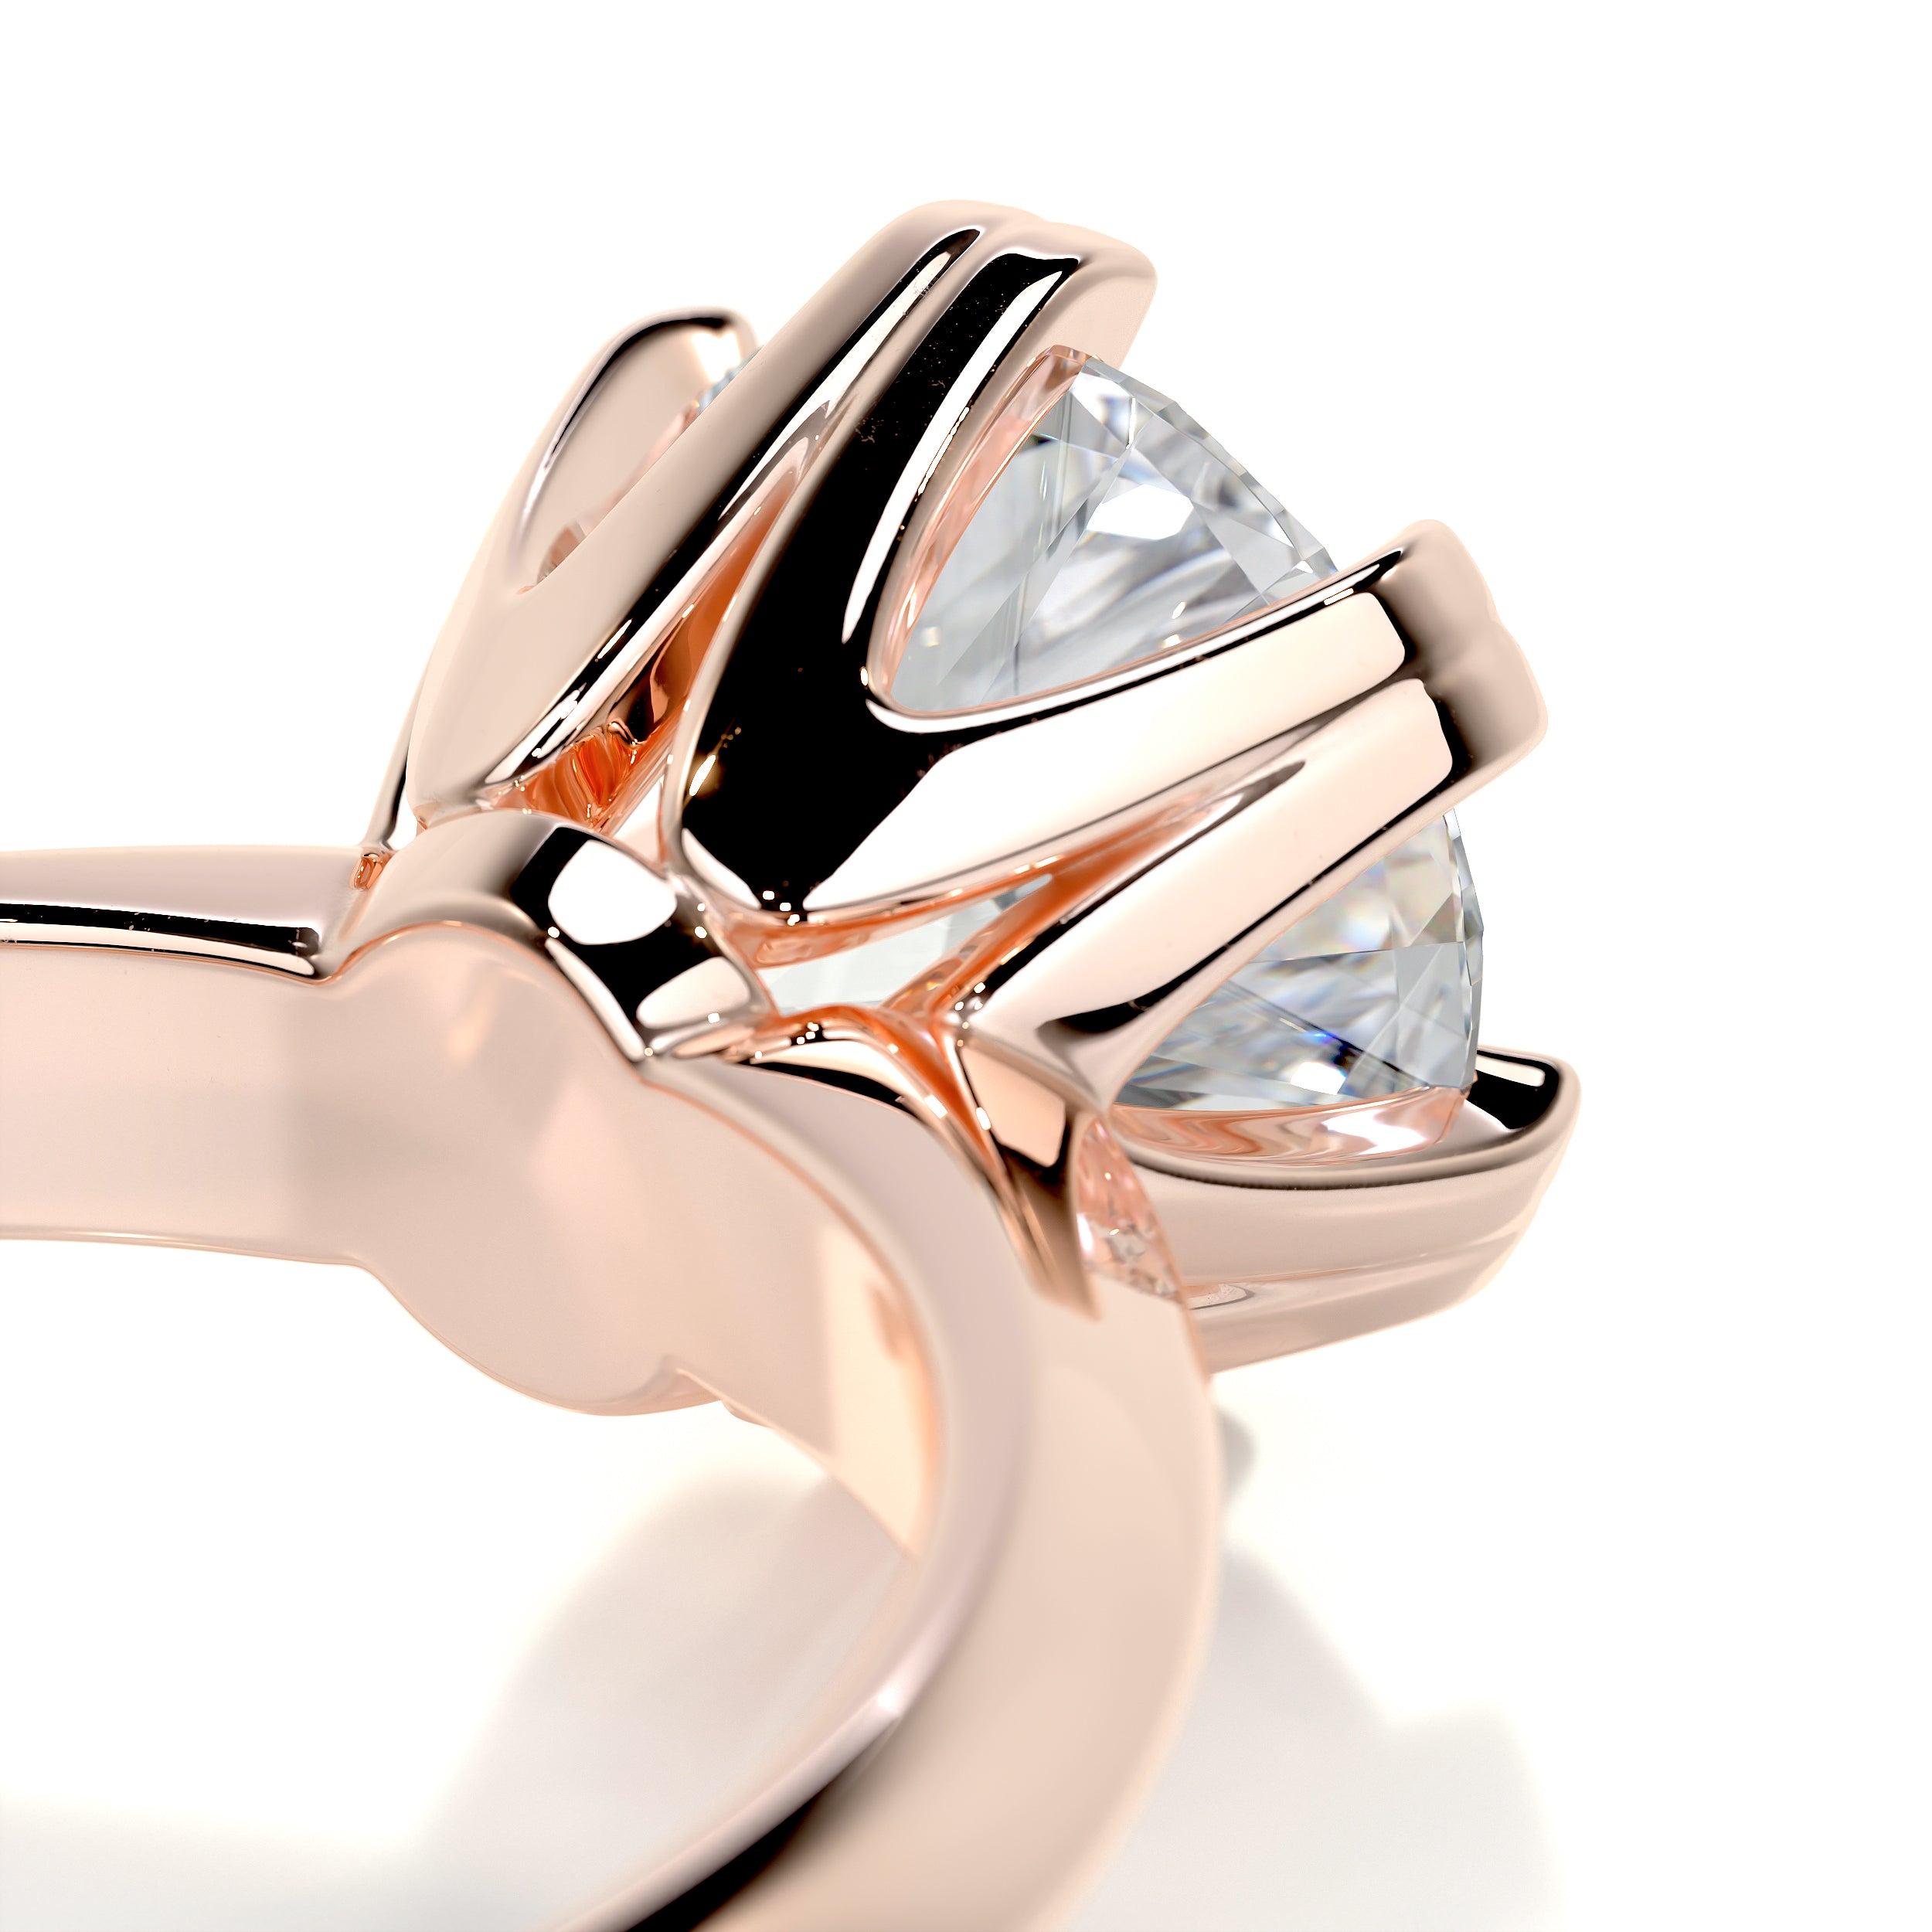 Alexis Diamond Engagement Ring   (1.5 Carat) -14K Rose Gold